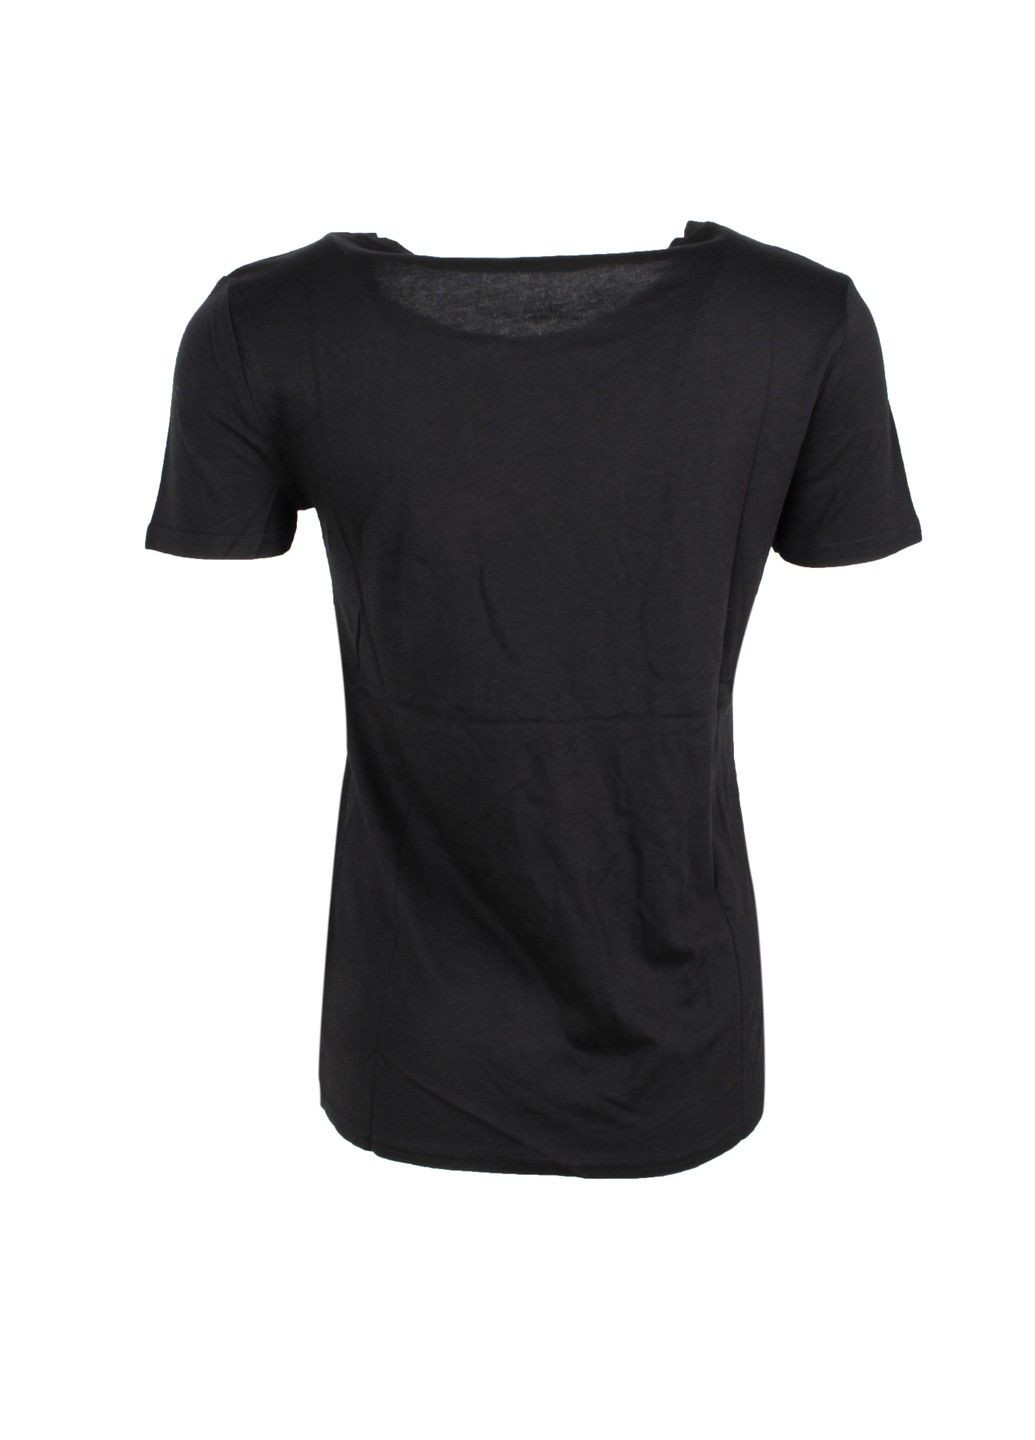 Черная летняя футболка женская meraki No Brand